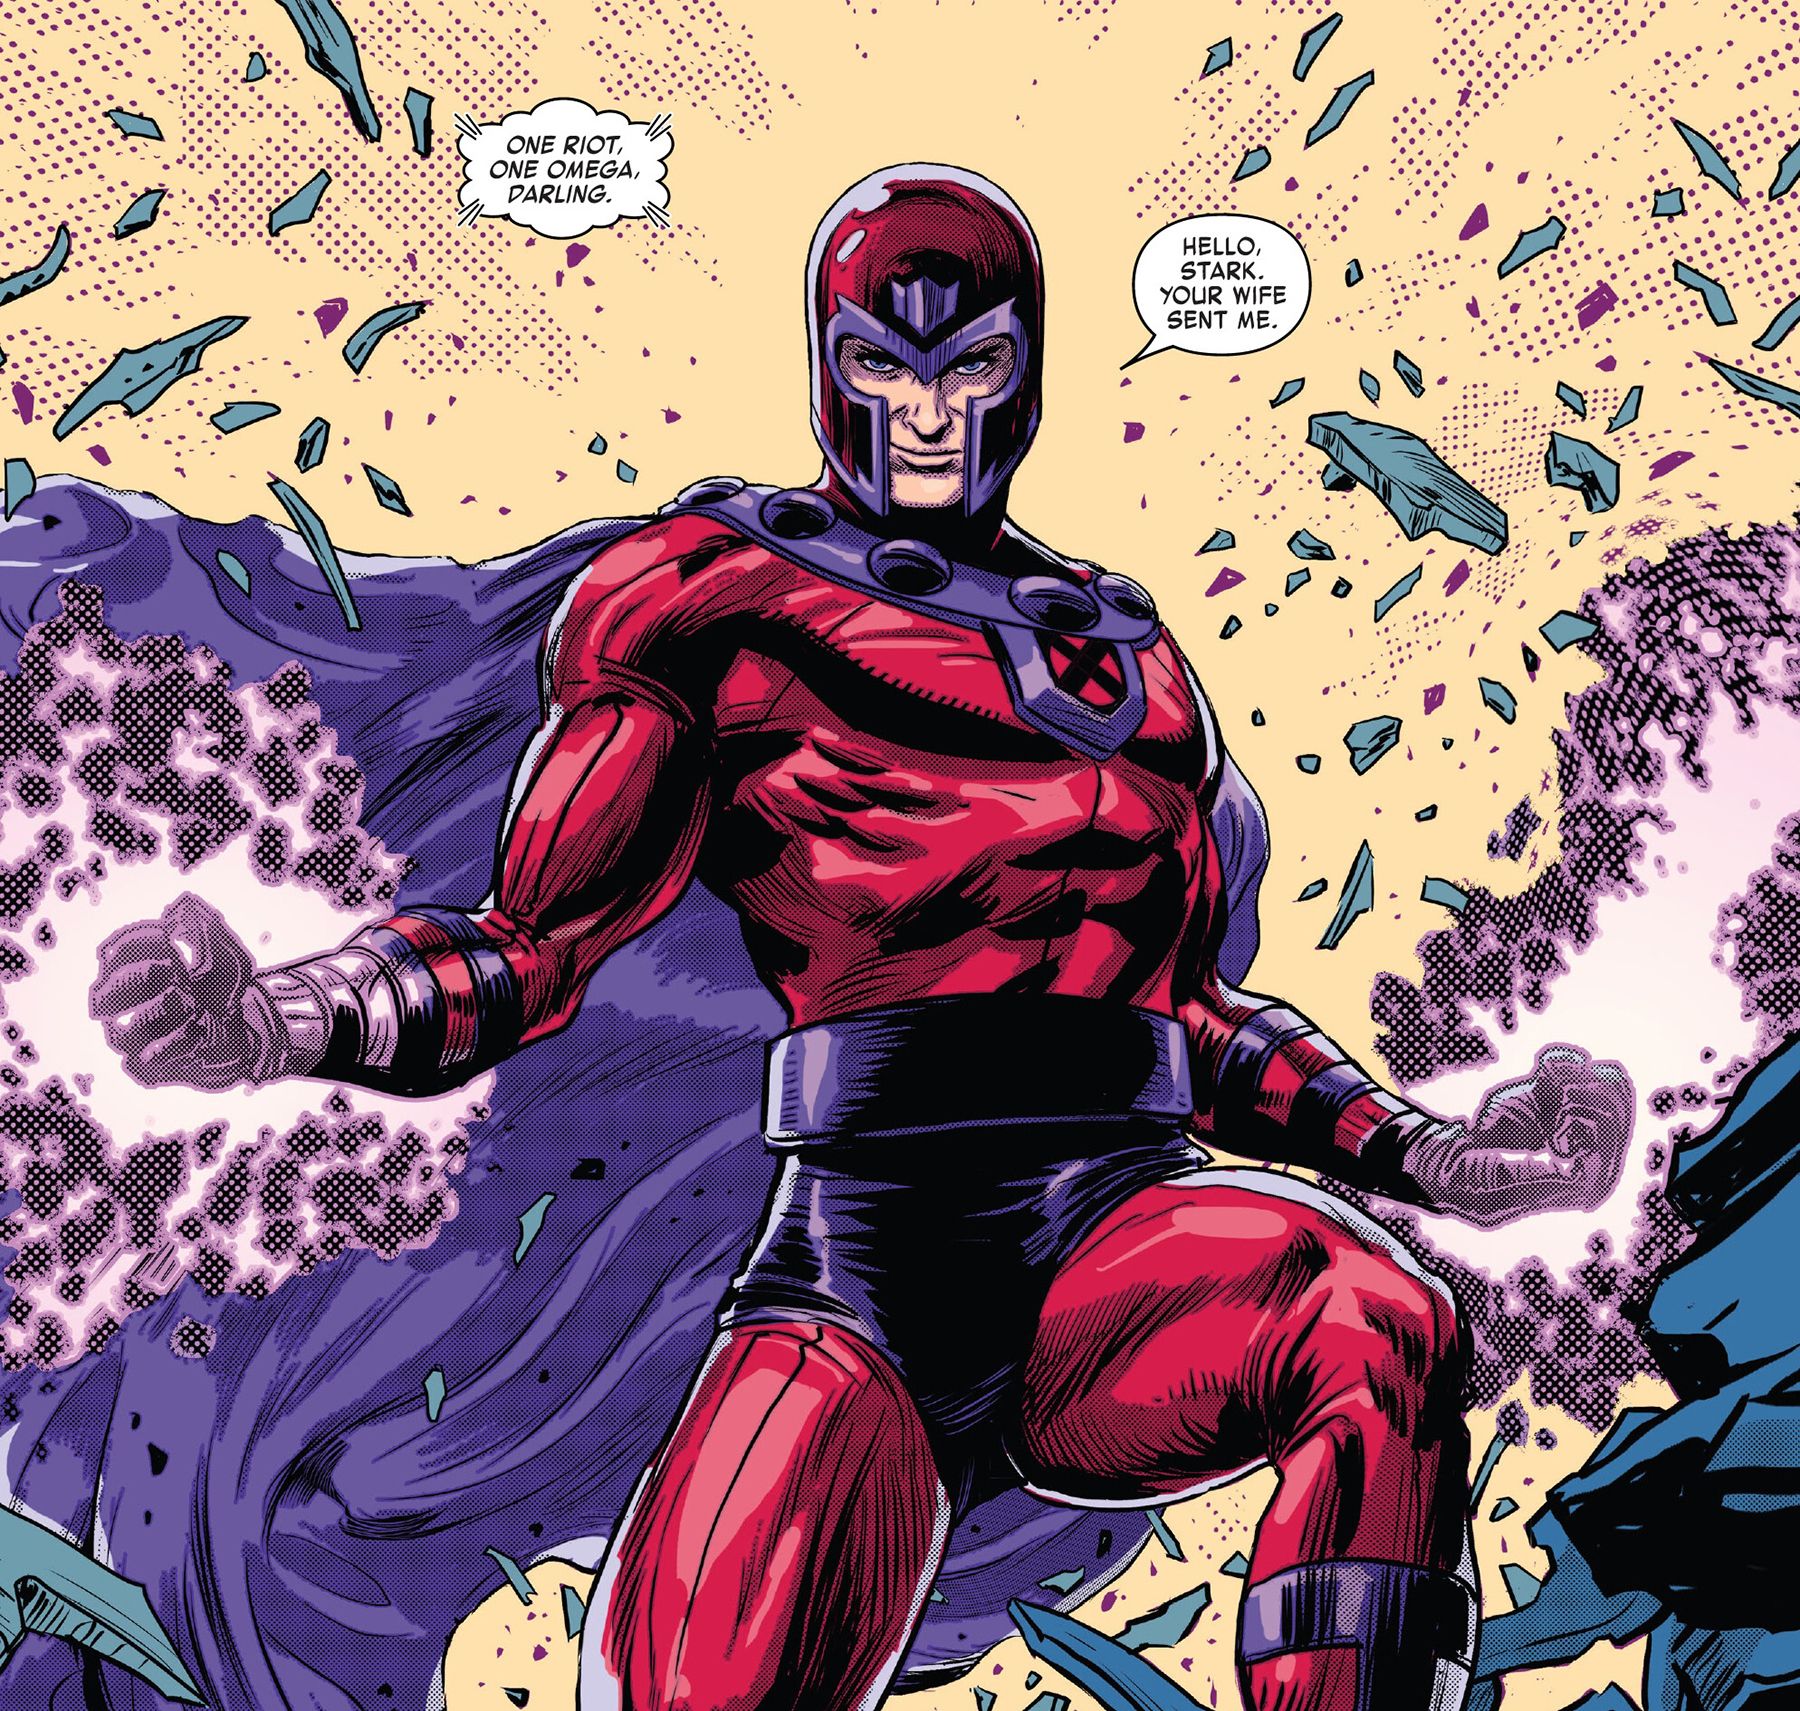 Homem de Ferro Invencível # 17, página 26 - Magneto chega, dizendo a Tony Stark "sua esposa me enviou".